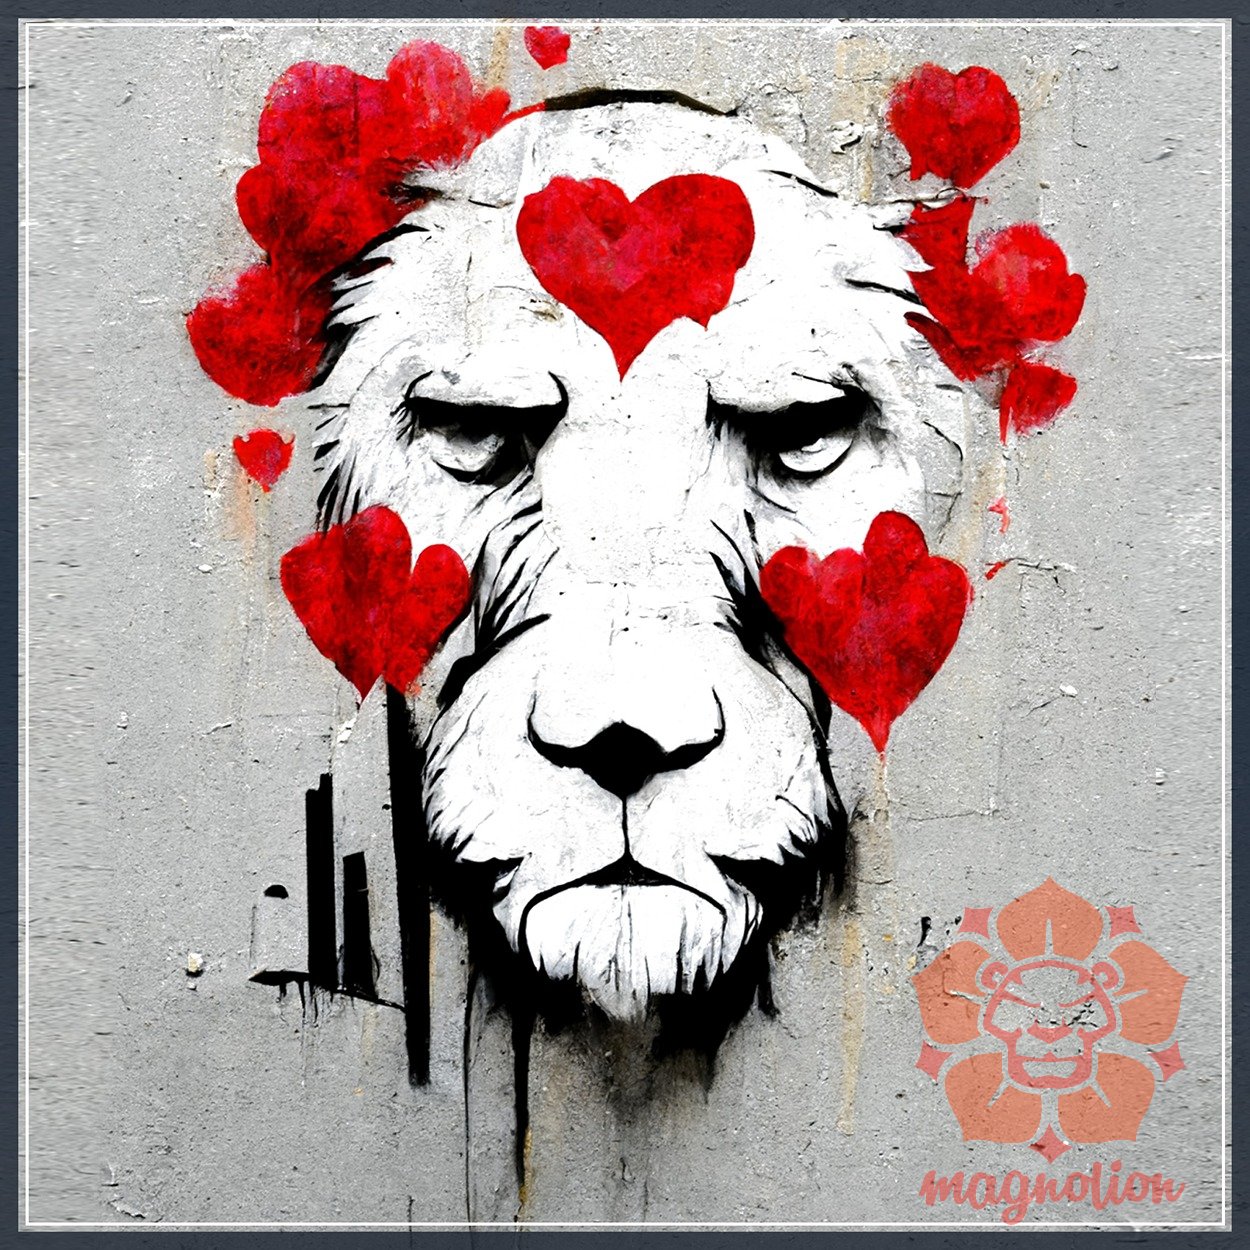 Graffiti oroszlan szerelem